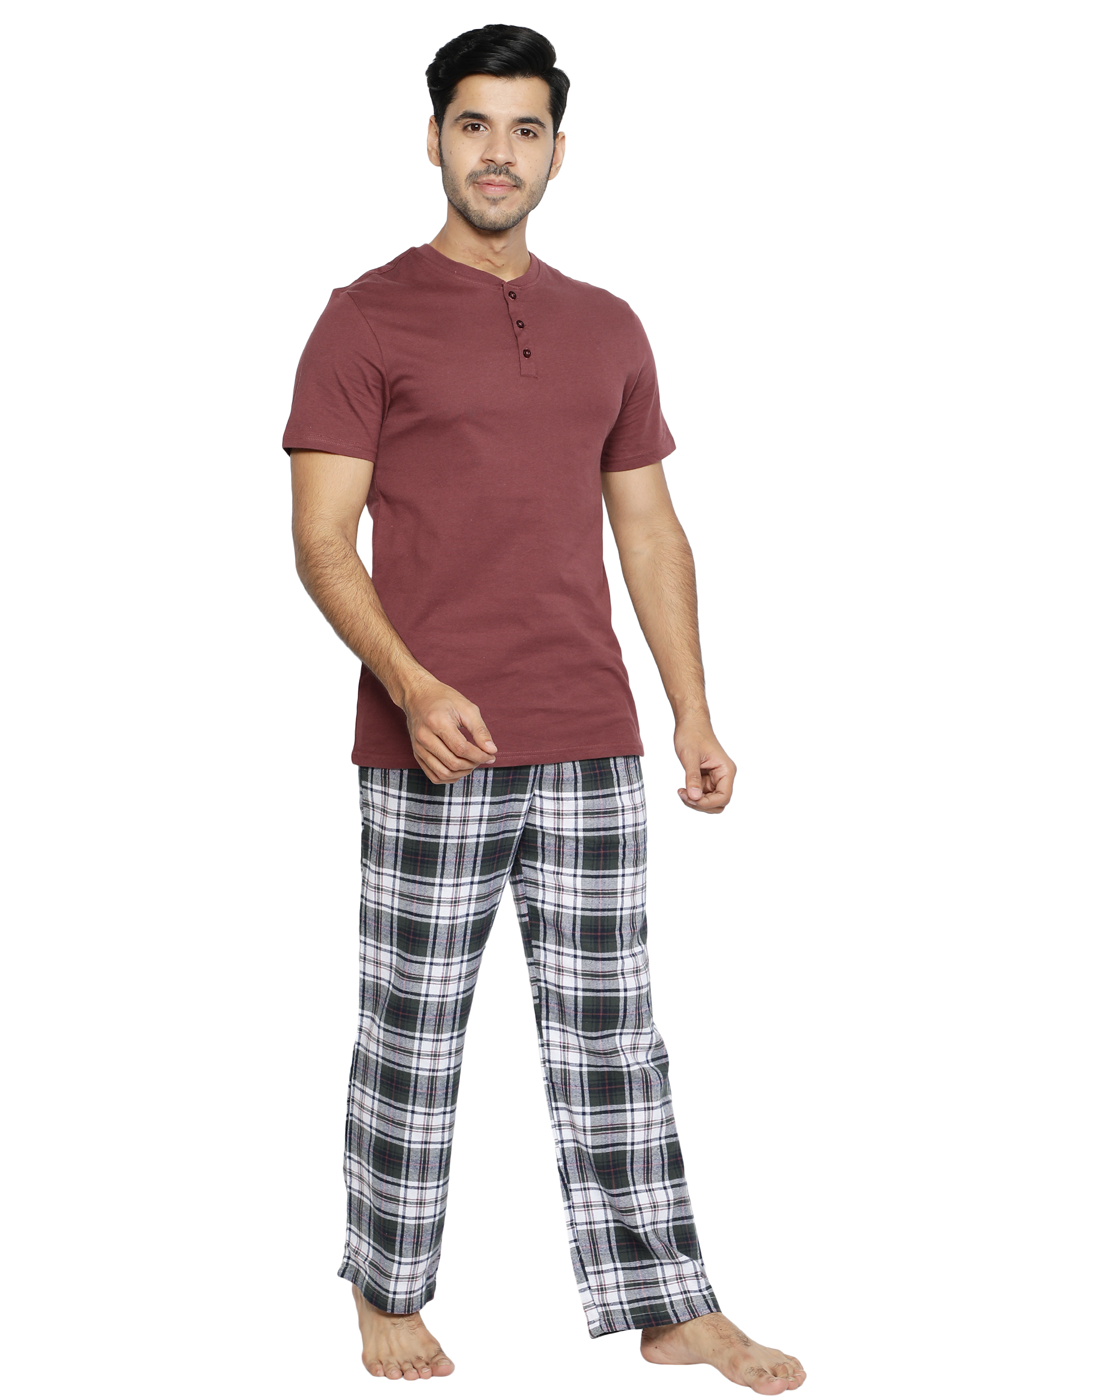 Pyjama Set for Mens-Black Checks